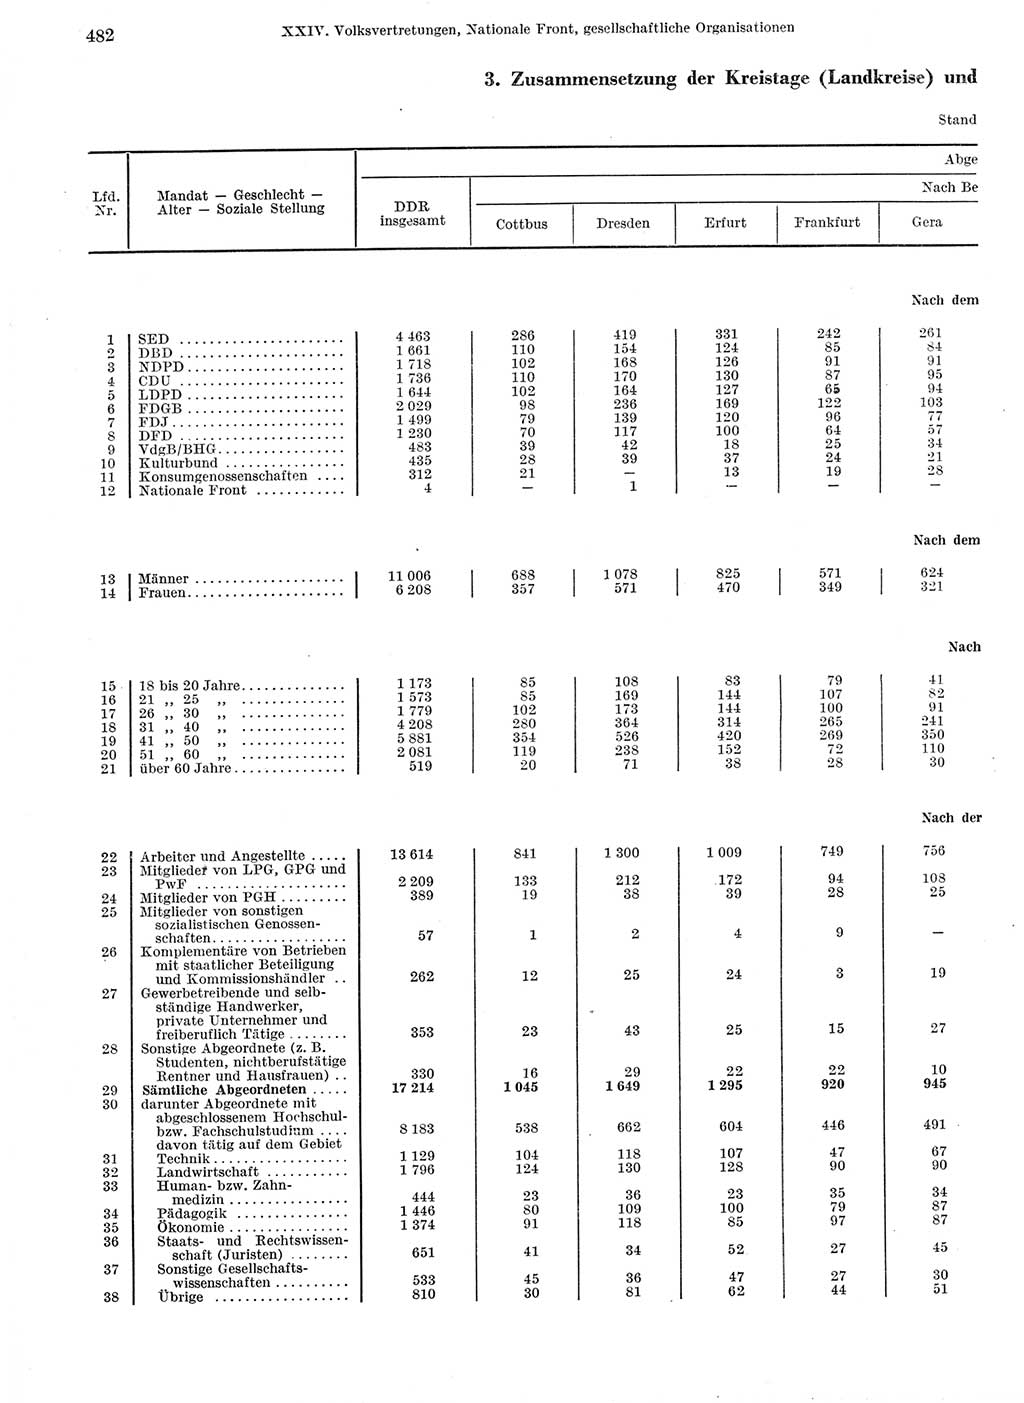 Statistisches Jahrbuch der Deutschen Demokratischen Republik (DDR) 1974, Seite 482 (Stat. Jb. DDR 1974, S. 482)